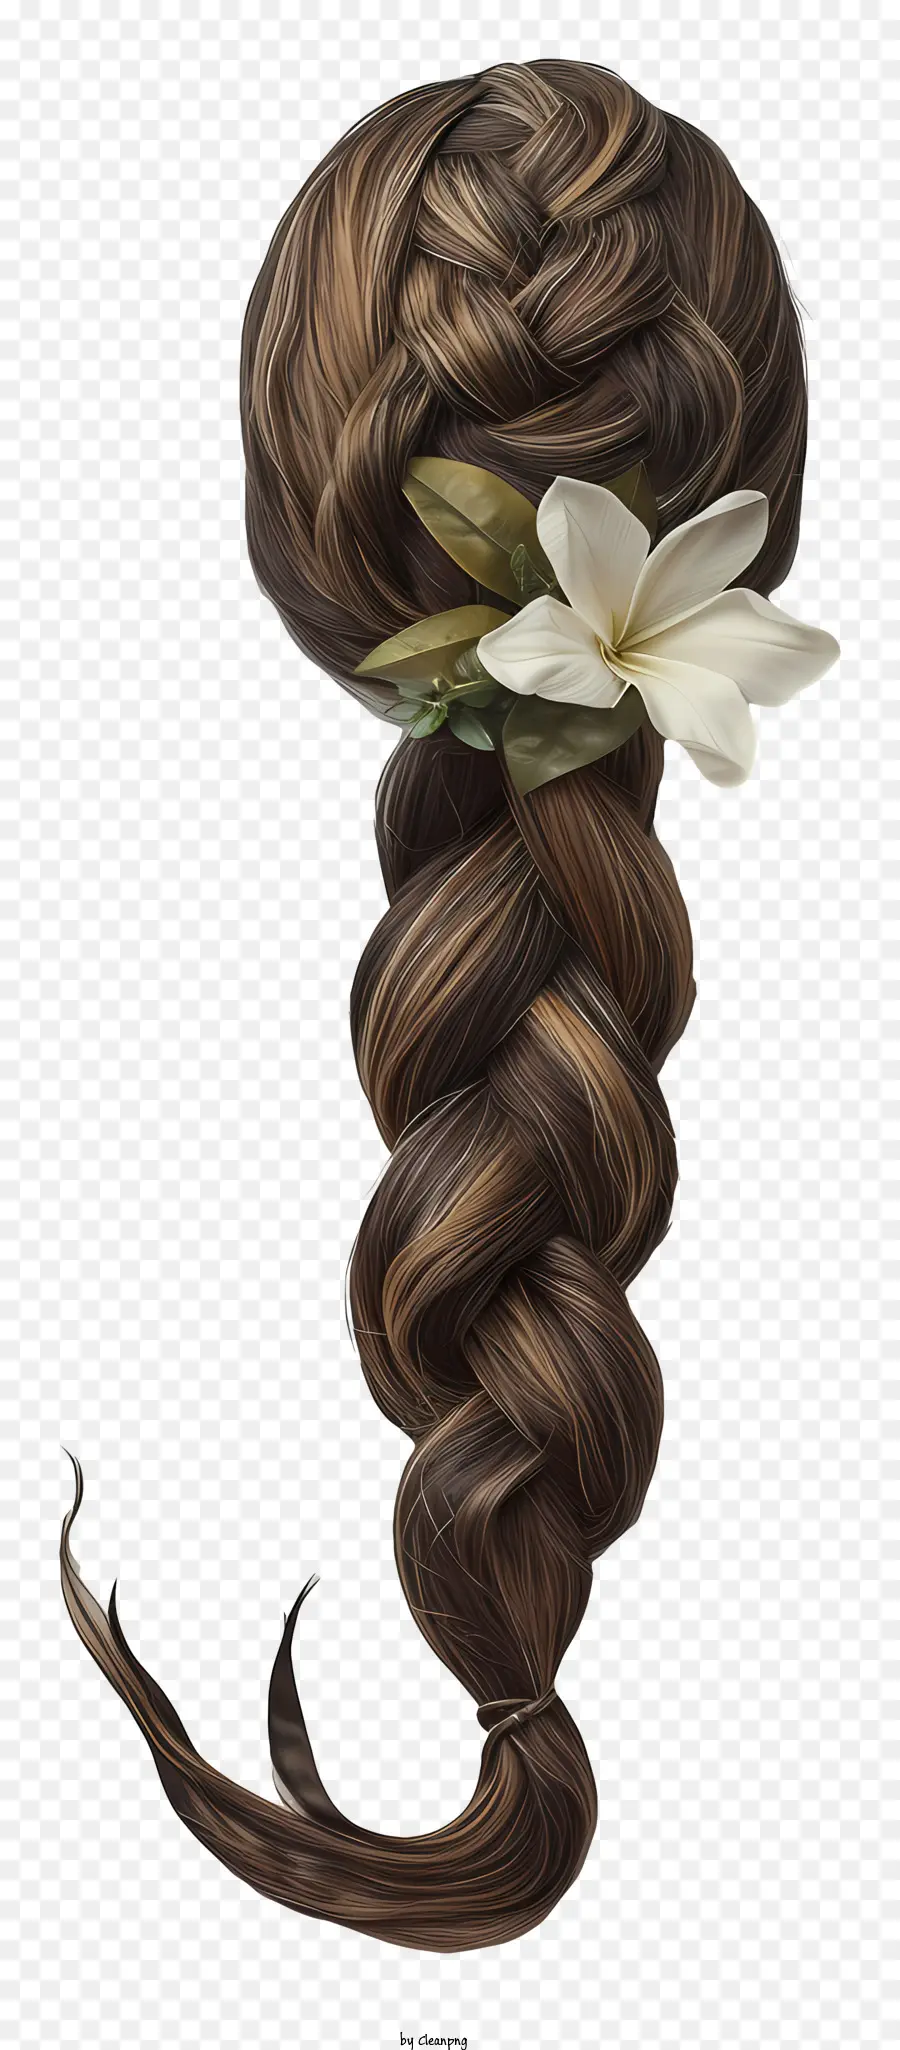 weiße Blume - Geflochtene Haare der Frau mit weißer Blumenschmuck